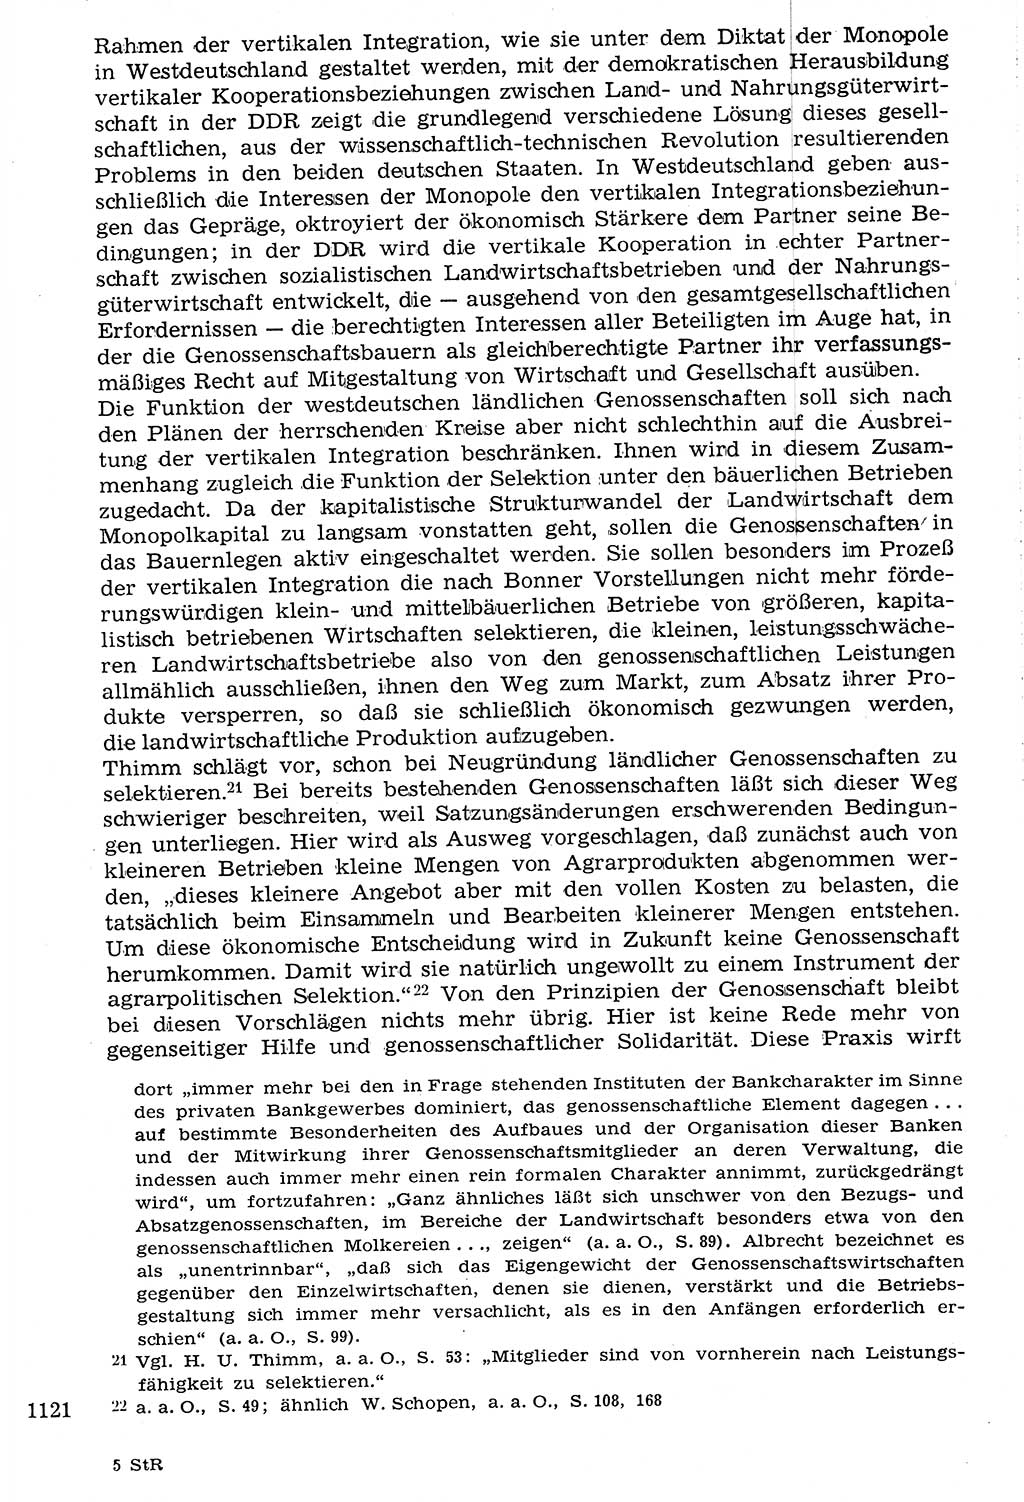 Staat und Recht (StuR), 17. Jahrgang [Deutsche Demokratische Republik (DDR)] 1968, Seite 1121 (StuR DDR 1968, S. 1121)